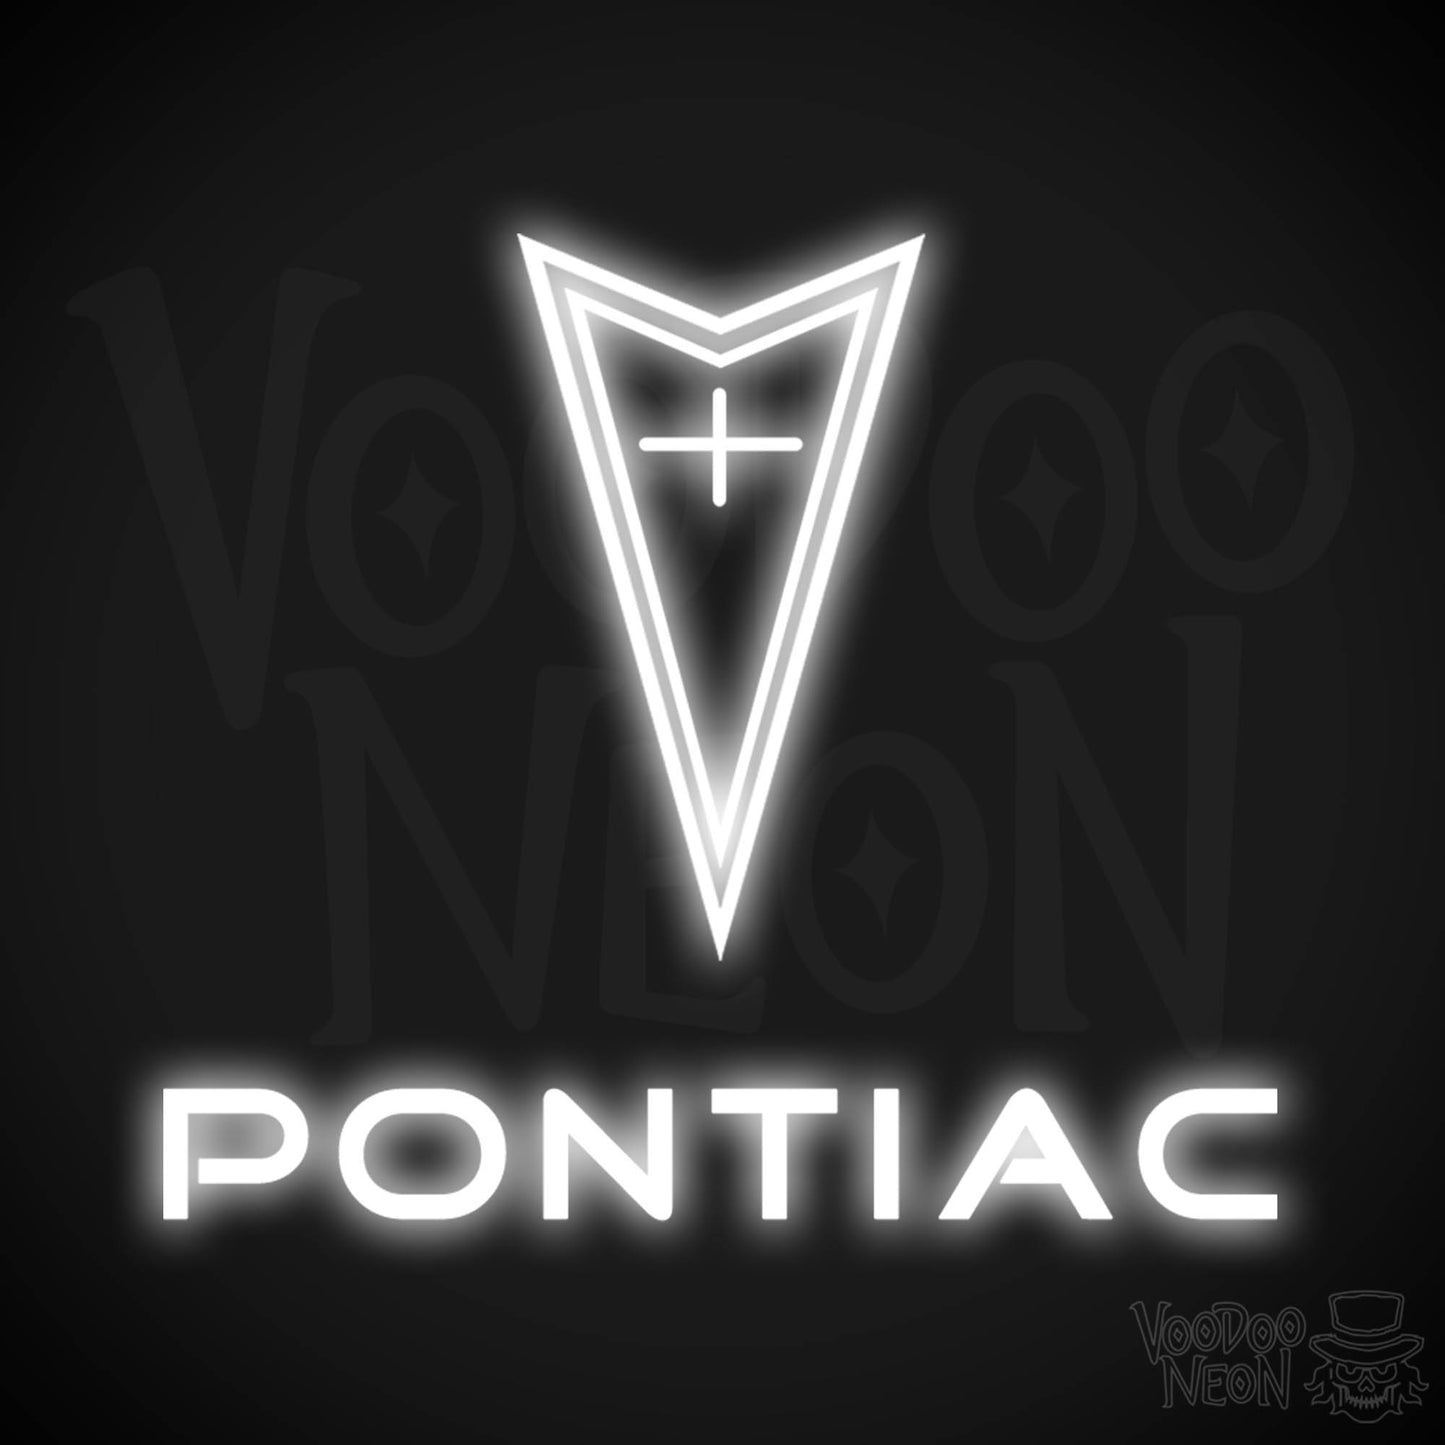 Pontiac Neon Sign - Pontiac Sign - Pontiac Decor - Wall Art - Color White